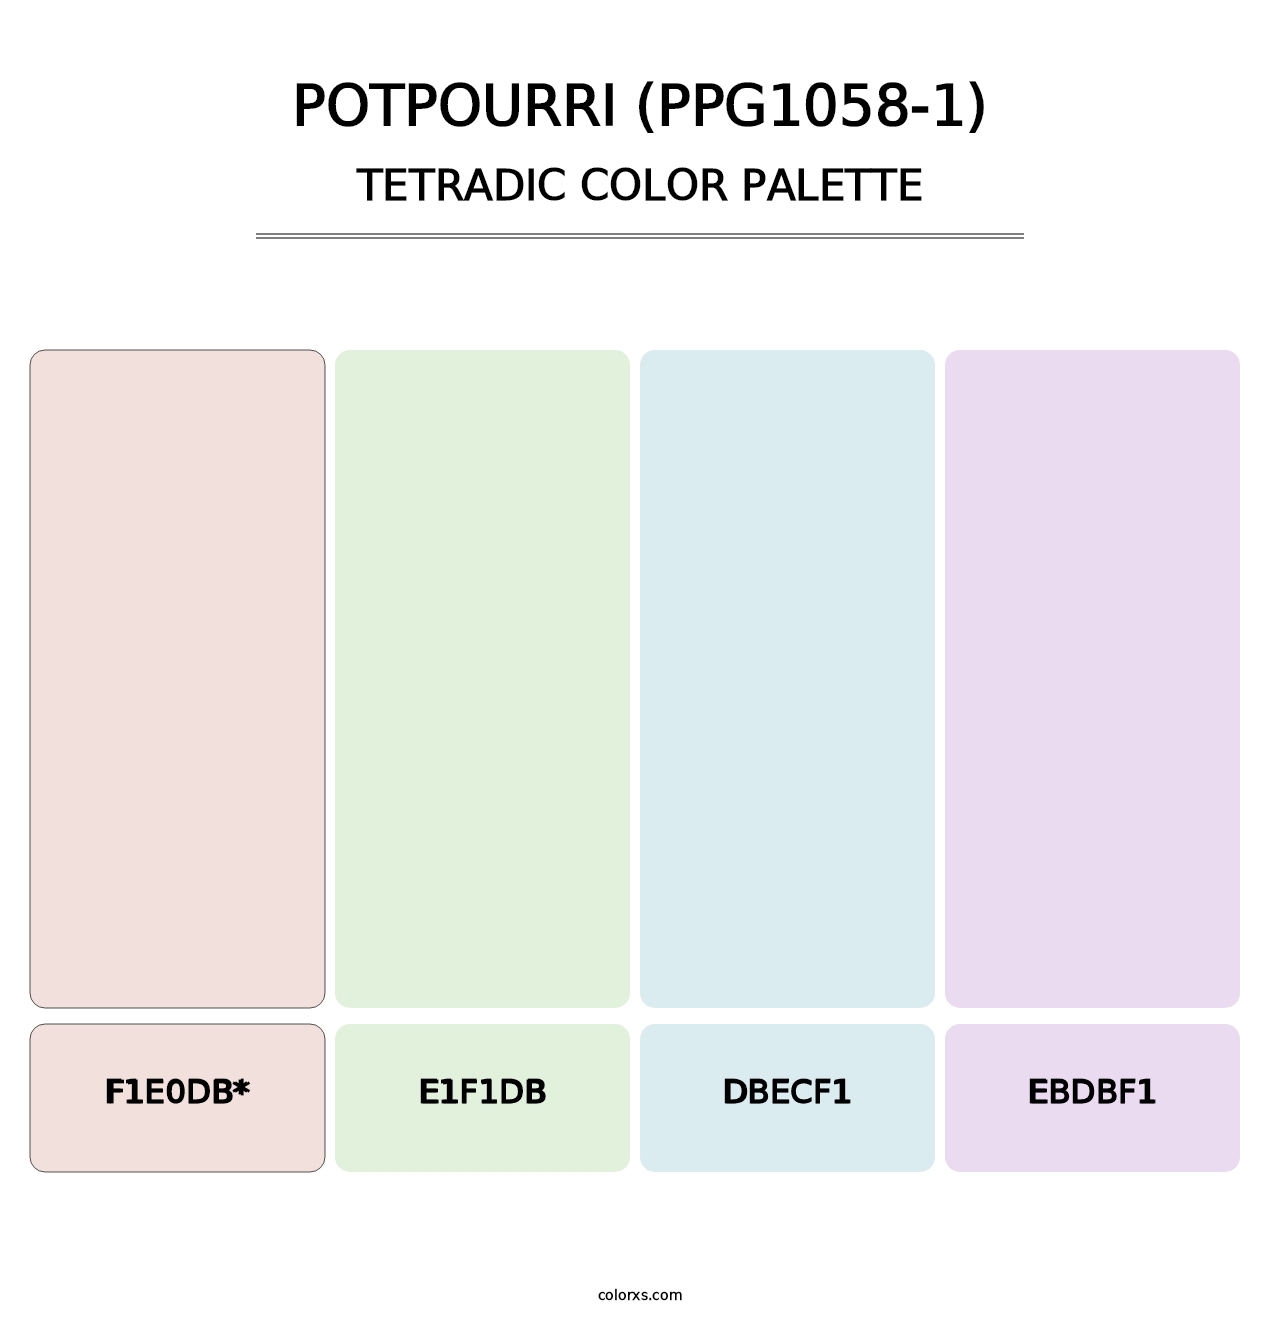 Potpourri (PPG1058-1) - Tetradic Color Palette